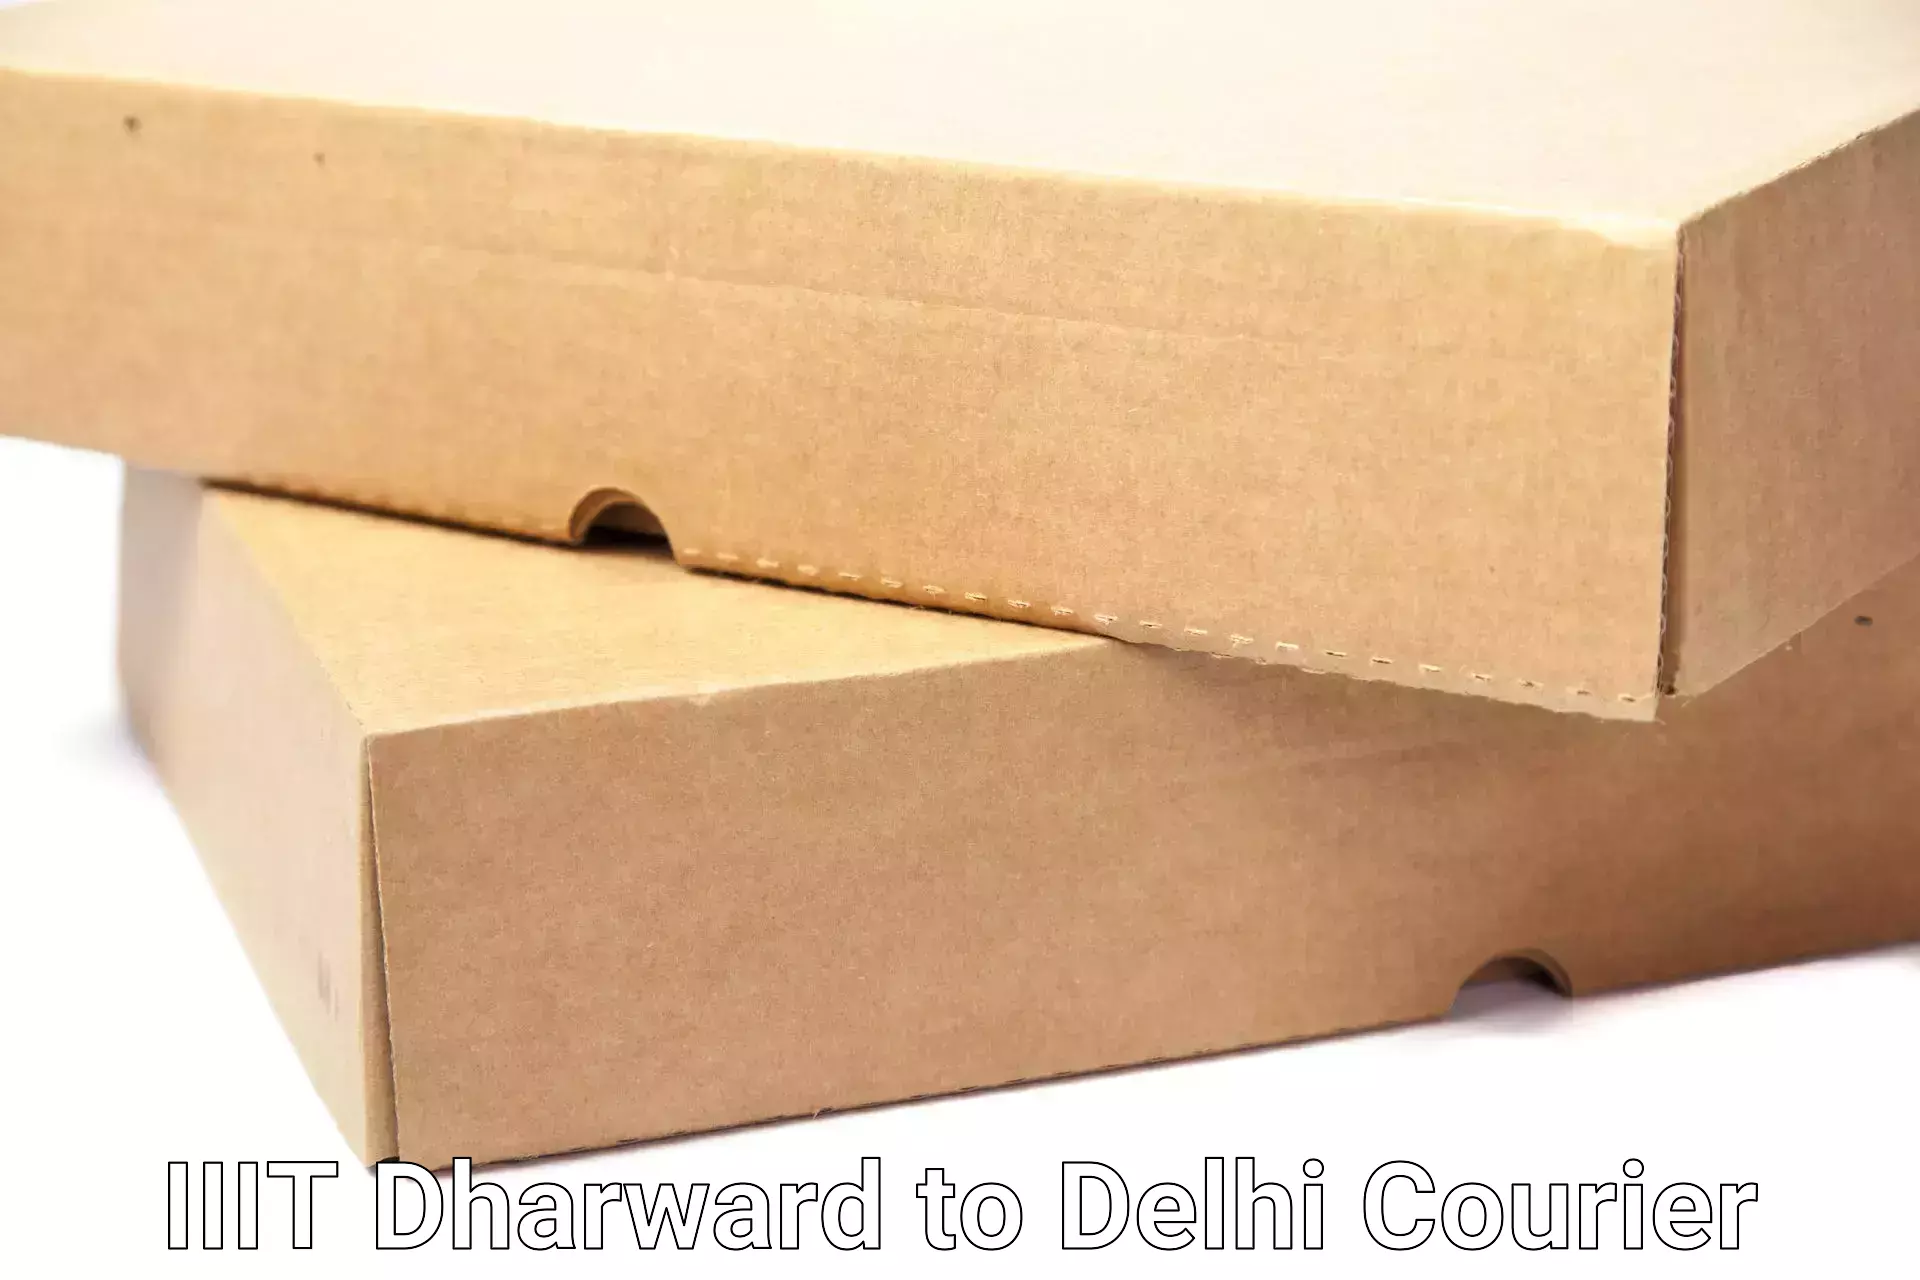 Home shifting experts IIIT Dharward to IIT Delhi